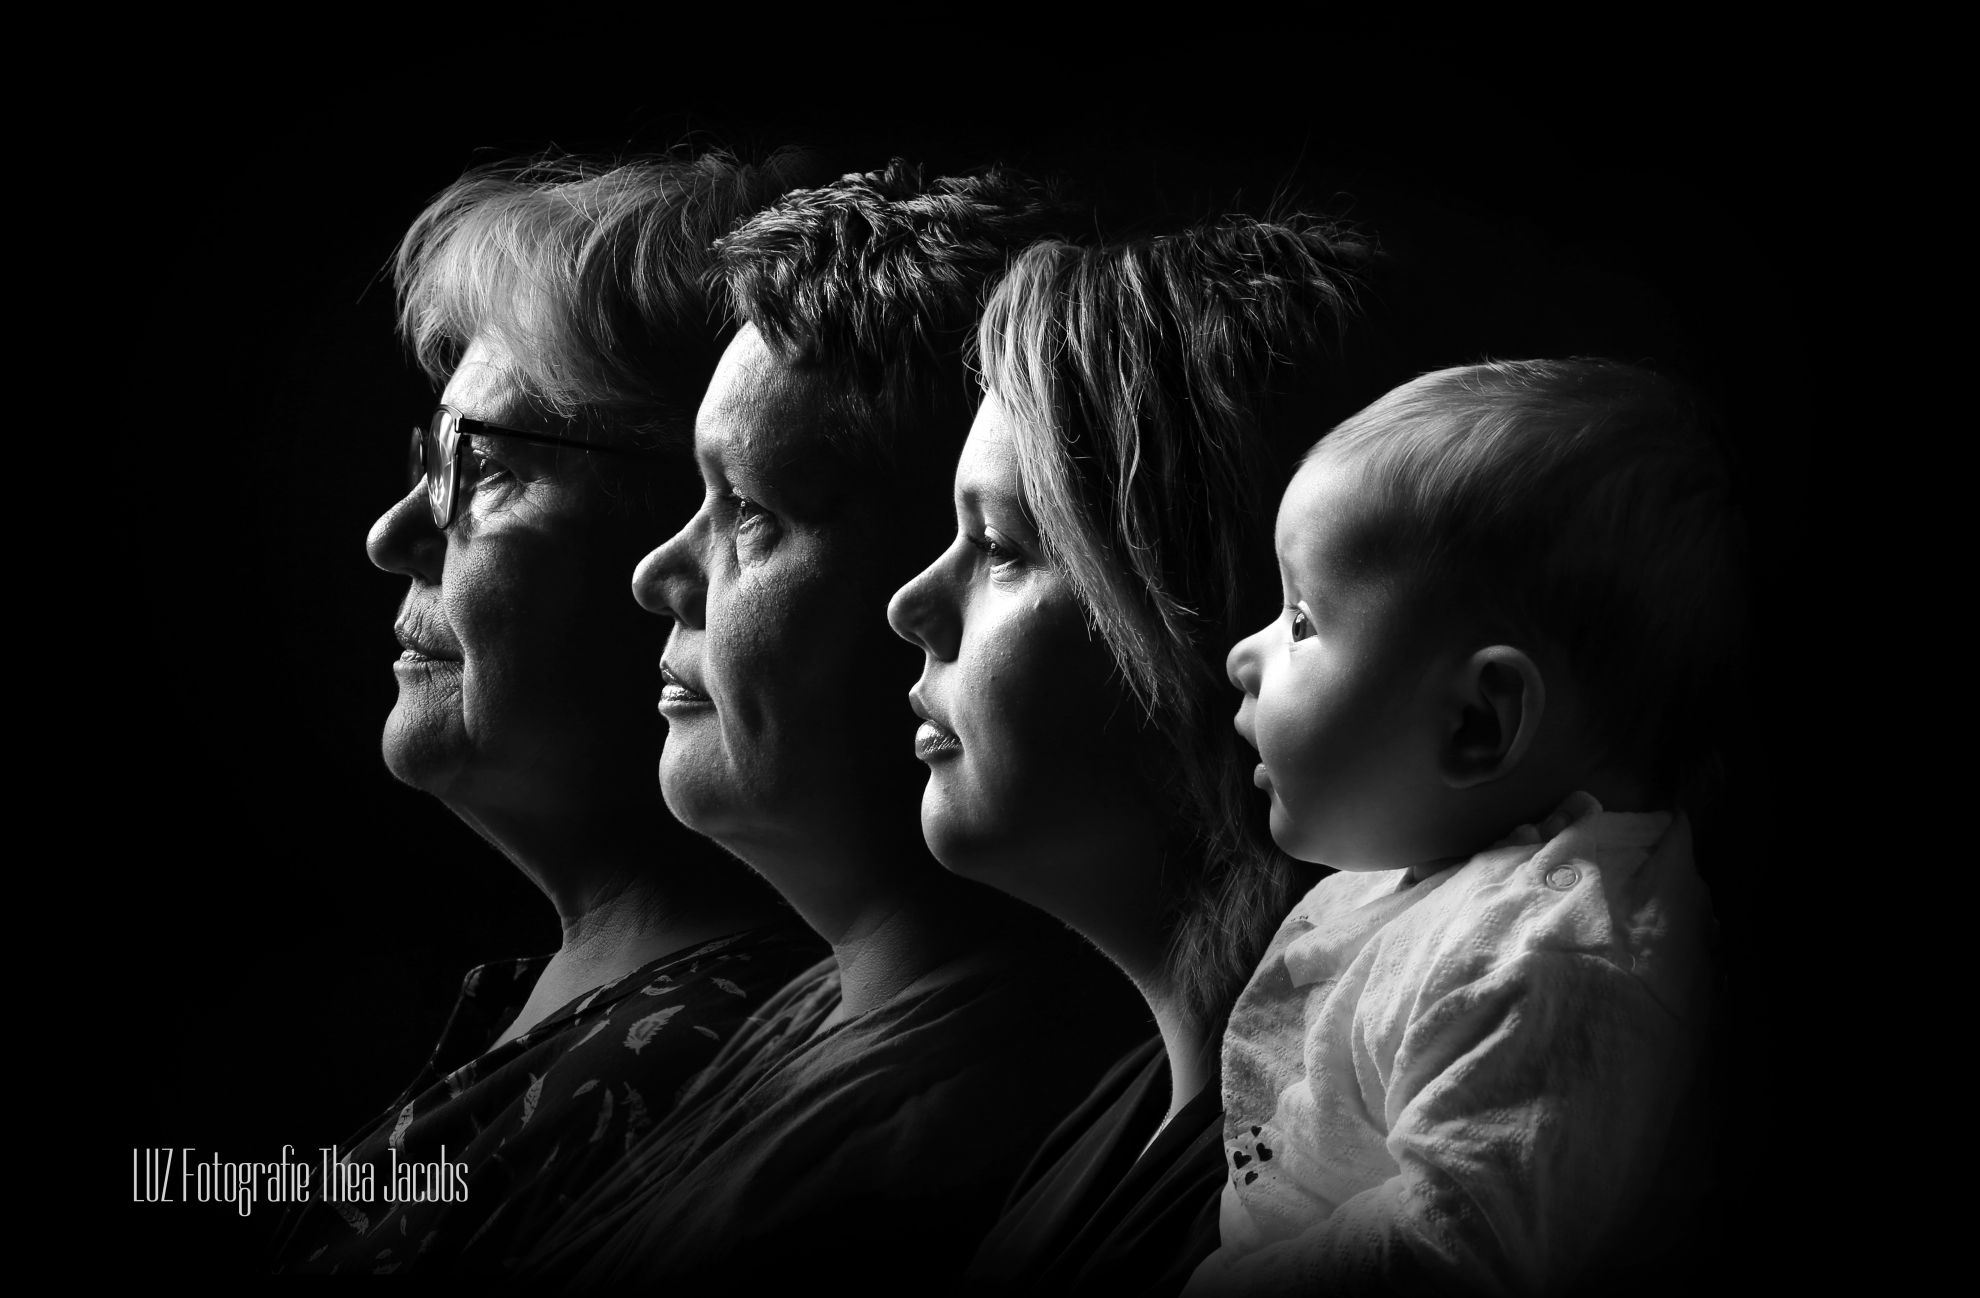 Foto 4 generaties zijaanzicht in zwartwit -in grootste resolutie LUZ.jpg